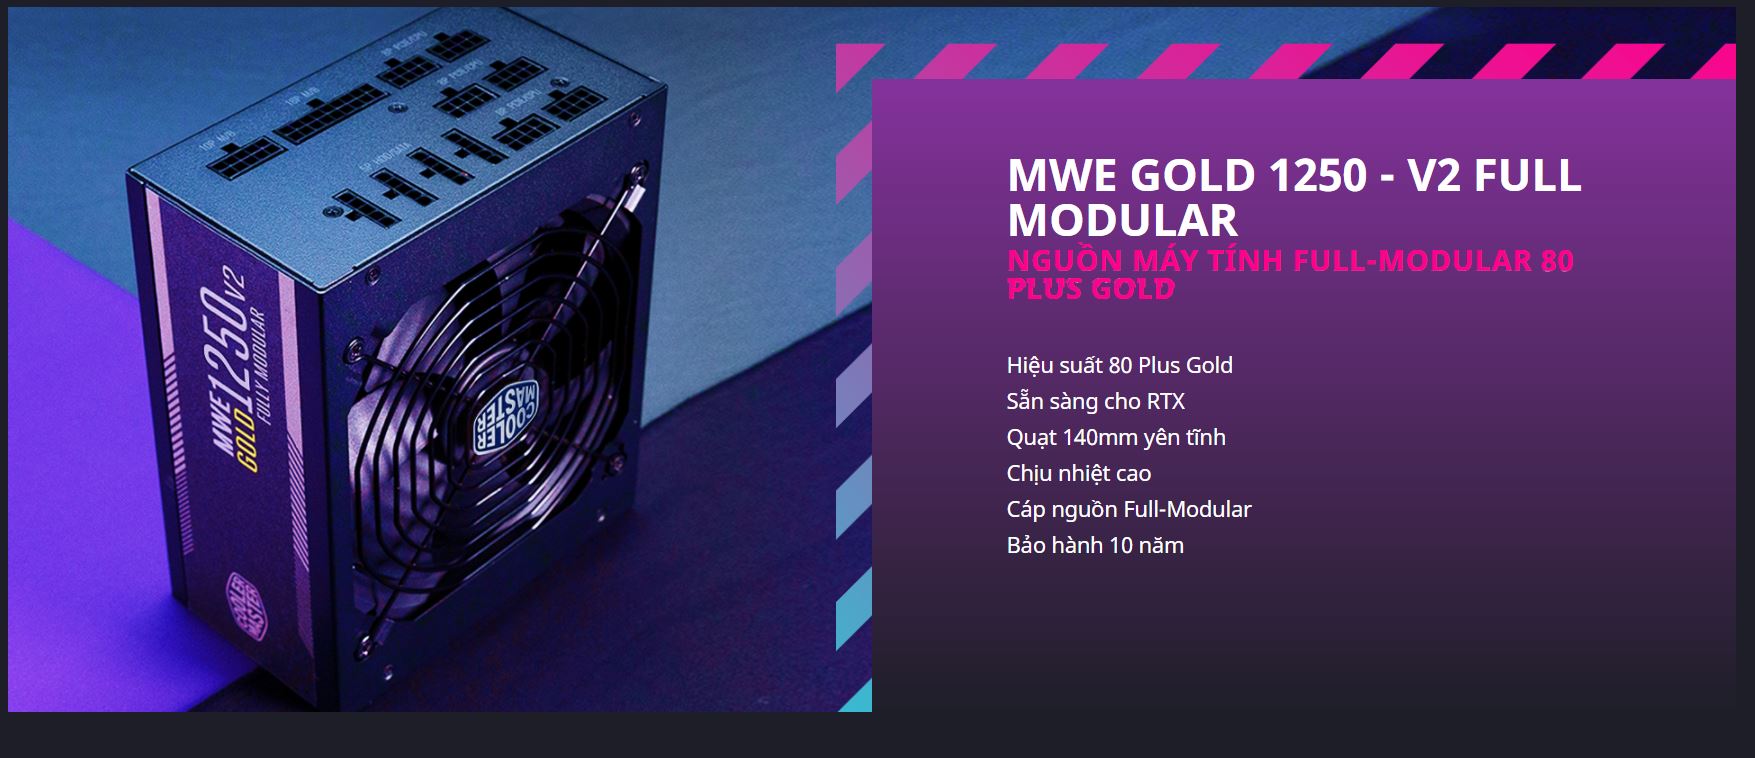 Nguồn Cooler Master MWE GOLD 1250 - V2 1250W (80 Plus Gold/Màu Đen/Full Modular) giới thiệu